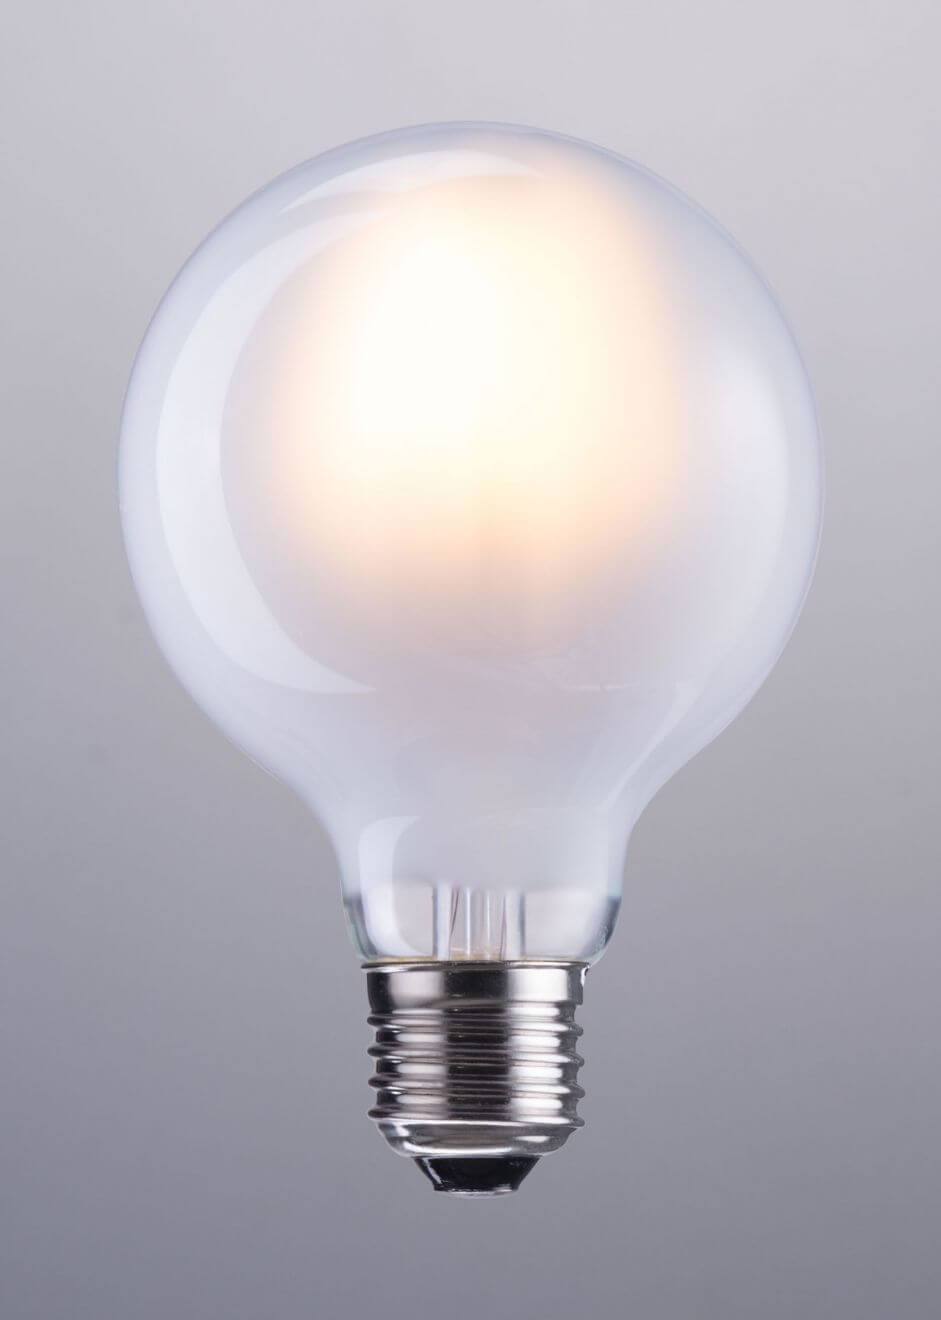 6 Watt Light Bulbs